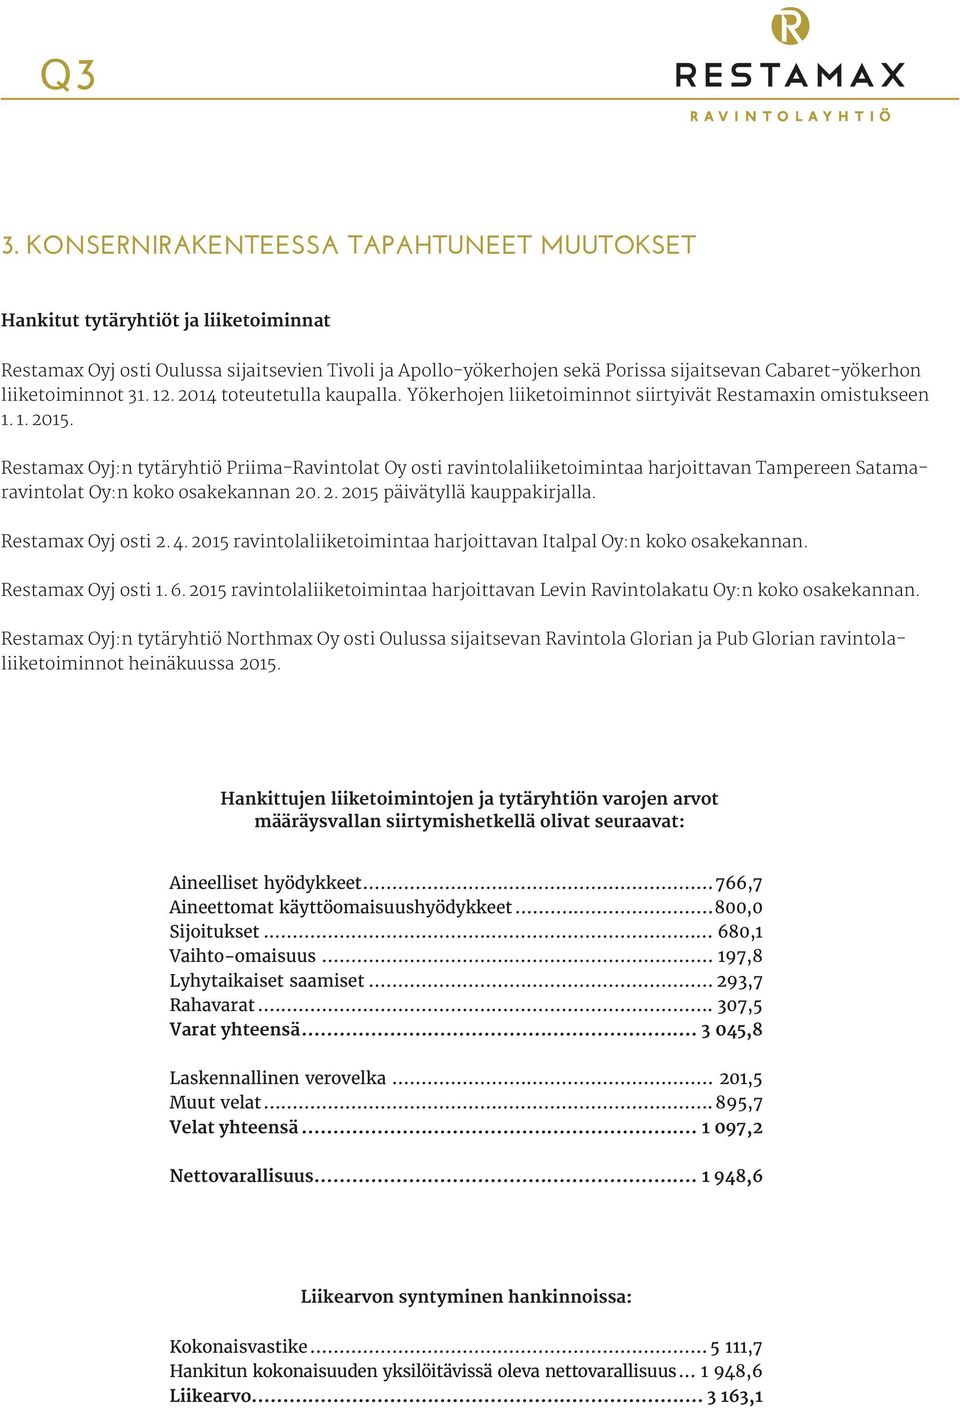 Restamax Oyj:n tytäryhtiö Priima-Ravintolat Oy osti ravintolaliiketoimintaa harjoittavan Tampereen Satamaravintolat Oy:n koko osakekannan 20. 2. 2015 päivätyllä kauppakirjalla. Restamax Oyj osti 2. 4.